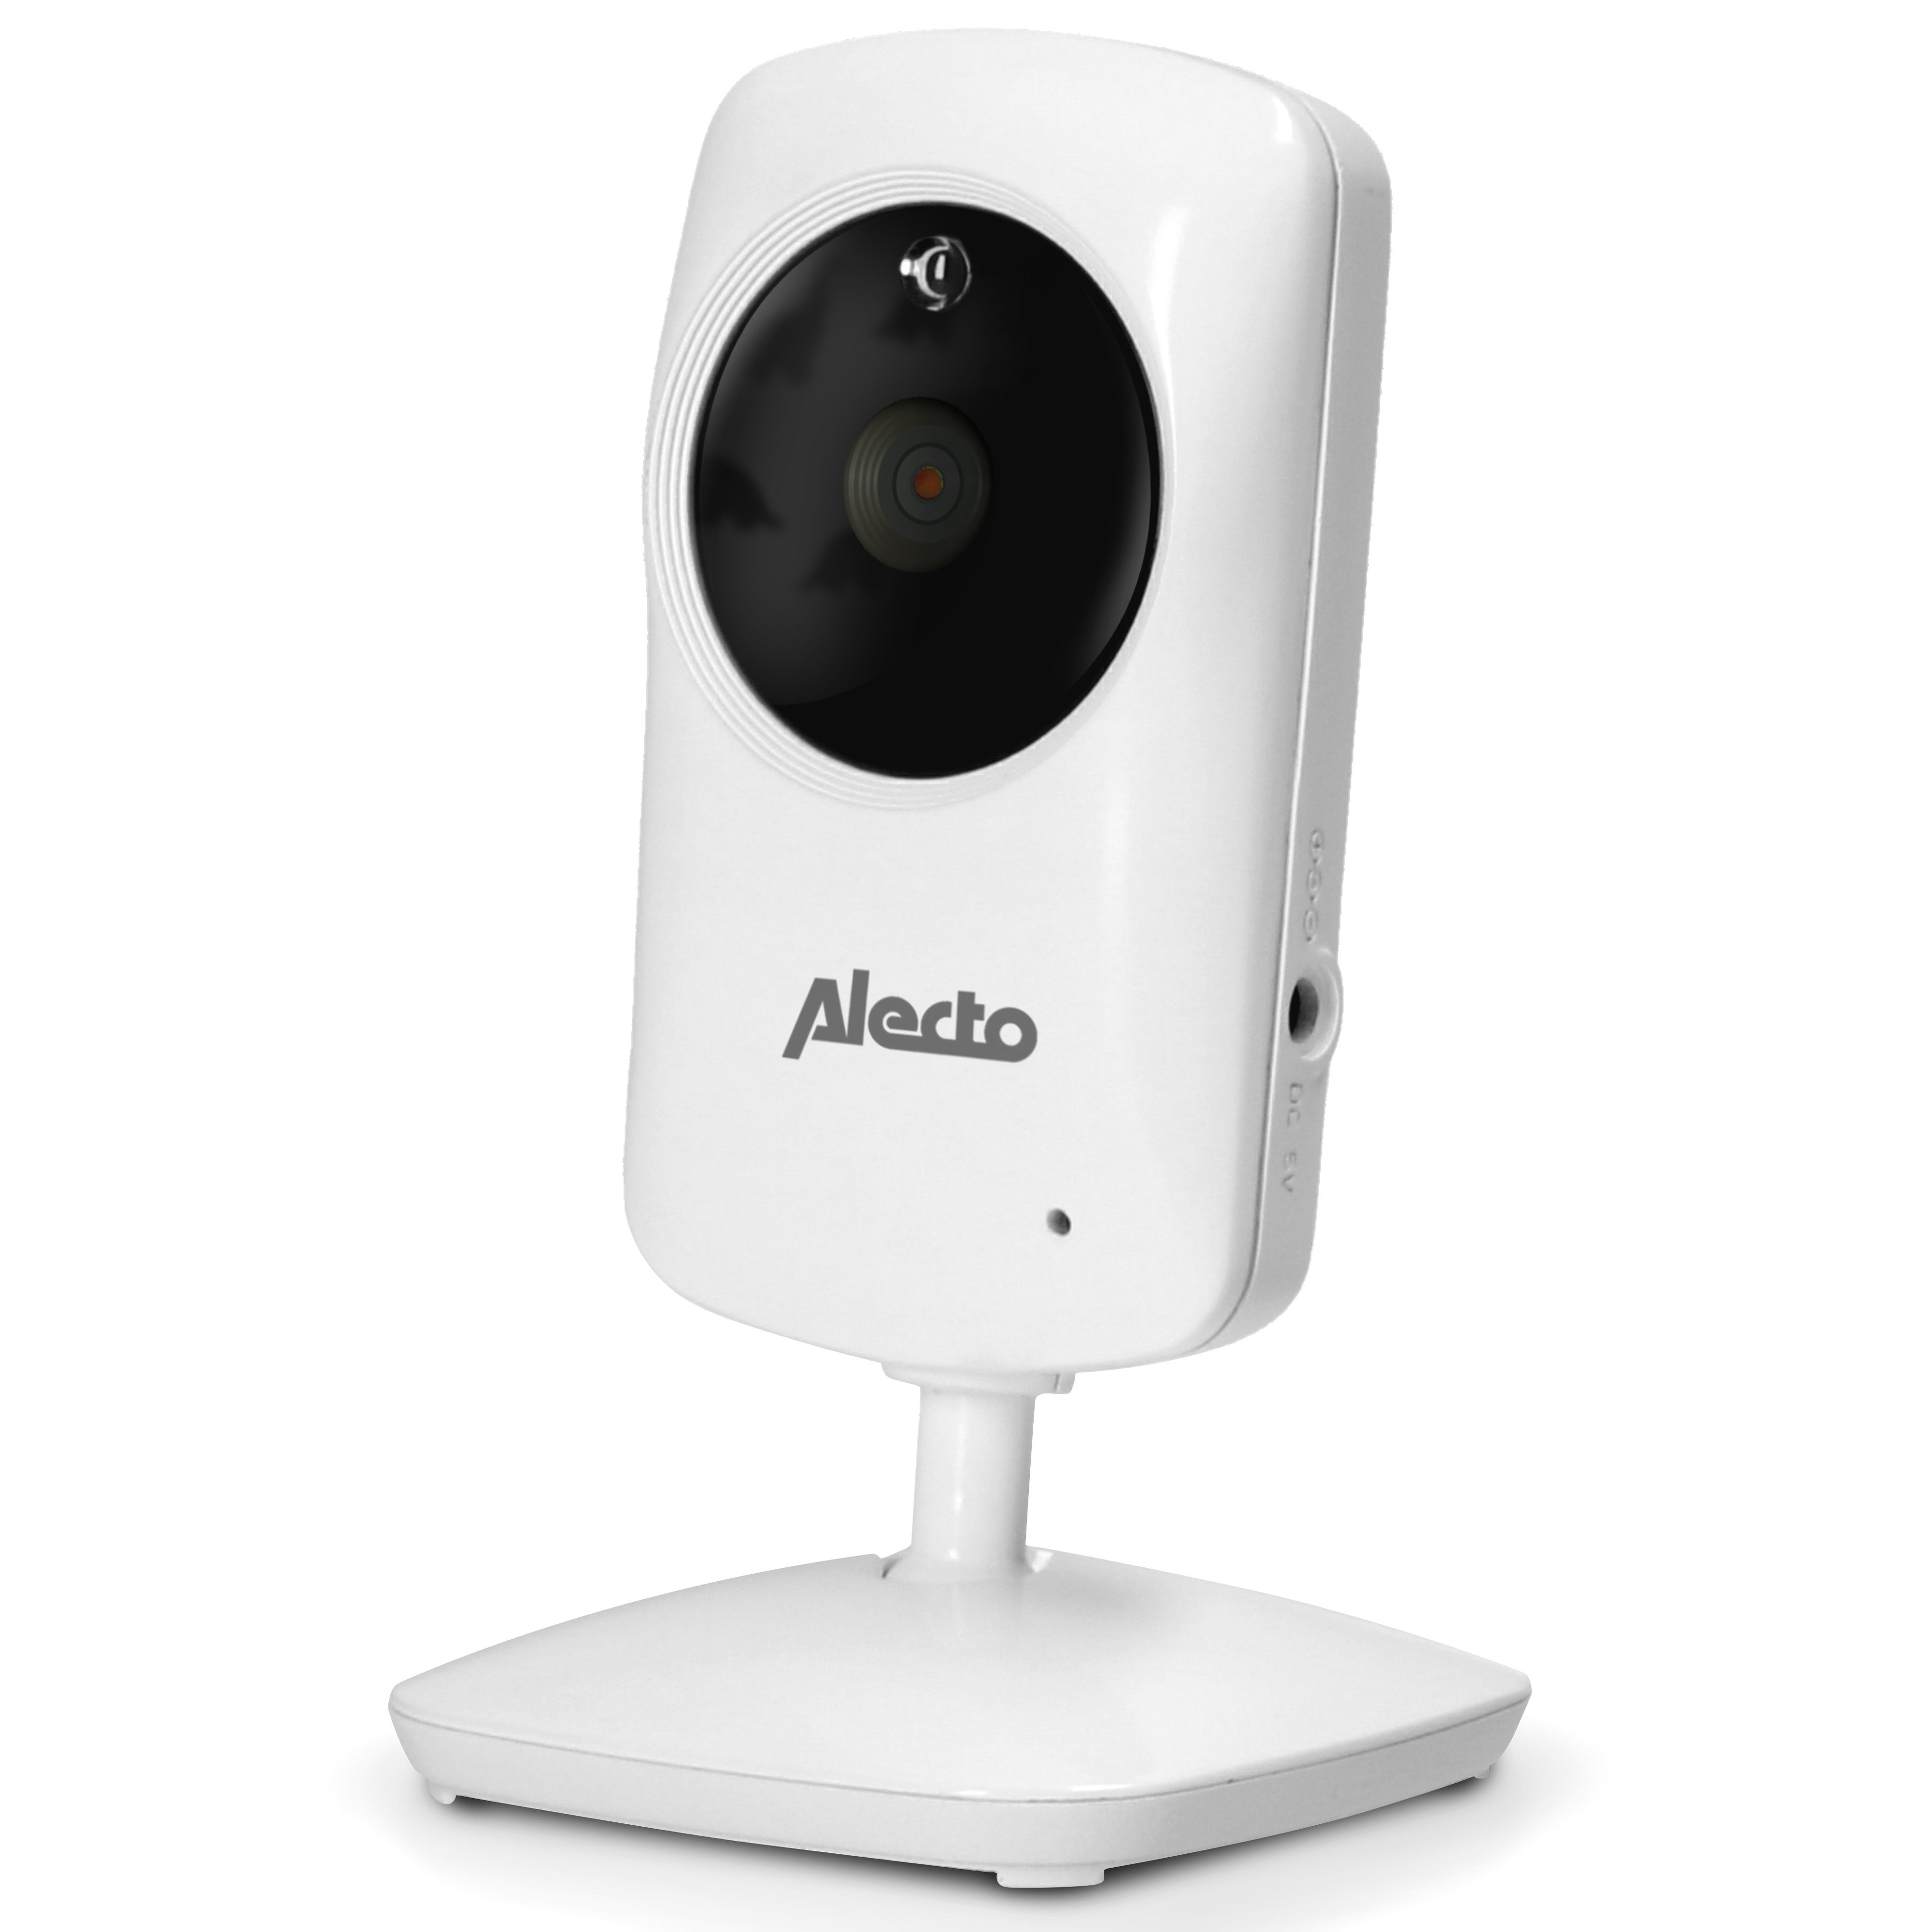 Alecto Video-Babyphone DVM-64C